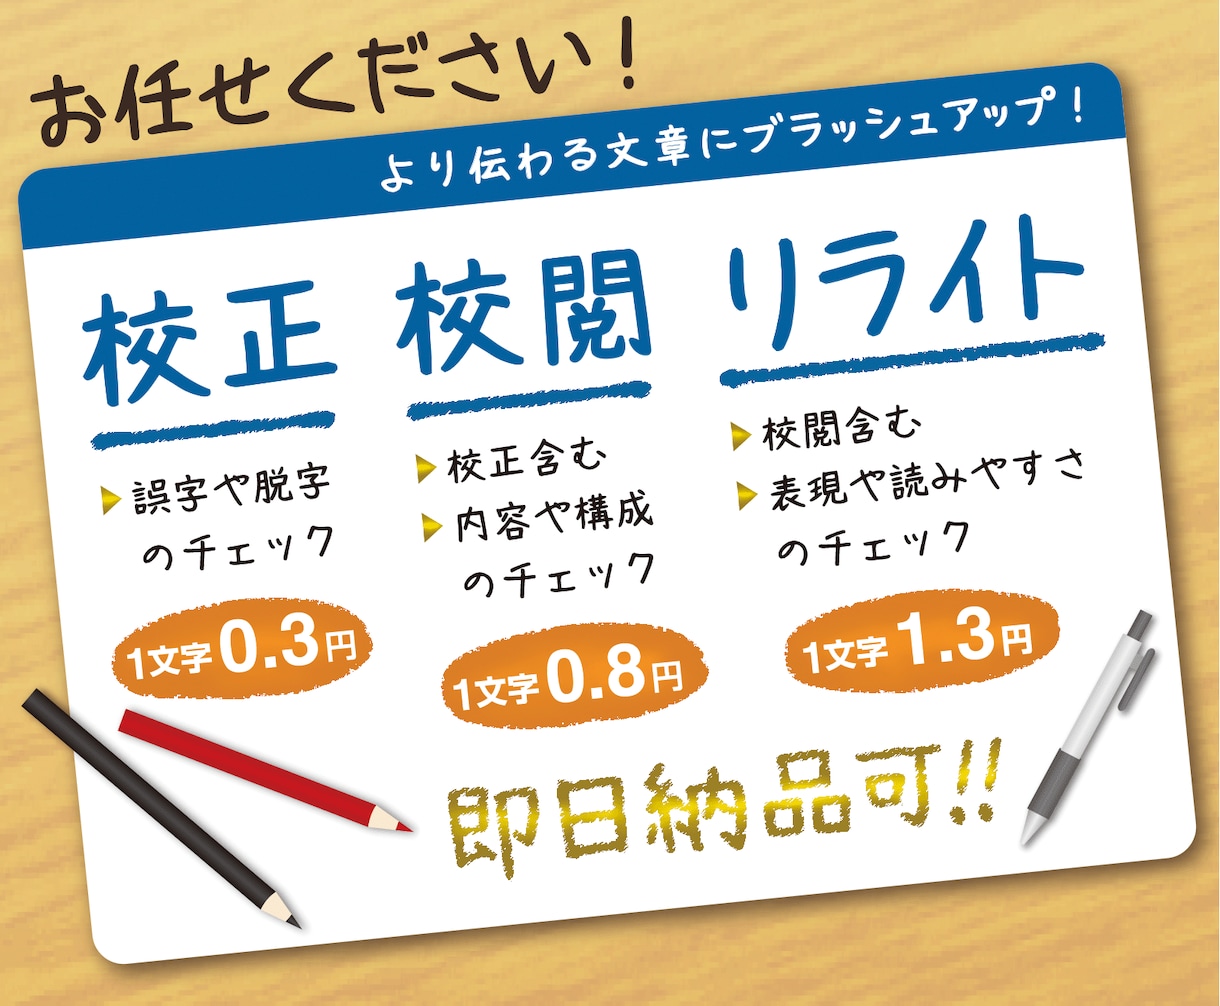 💬Coconara | 1 yen per character ~ Proofreading, proofreading, and rewriting Kousuke_Ozaki 0.3 …